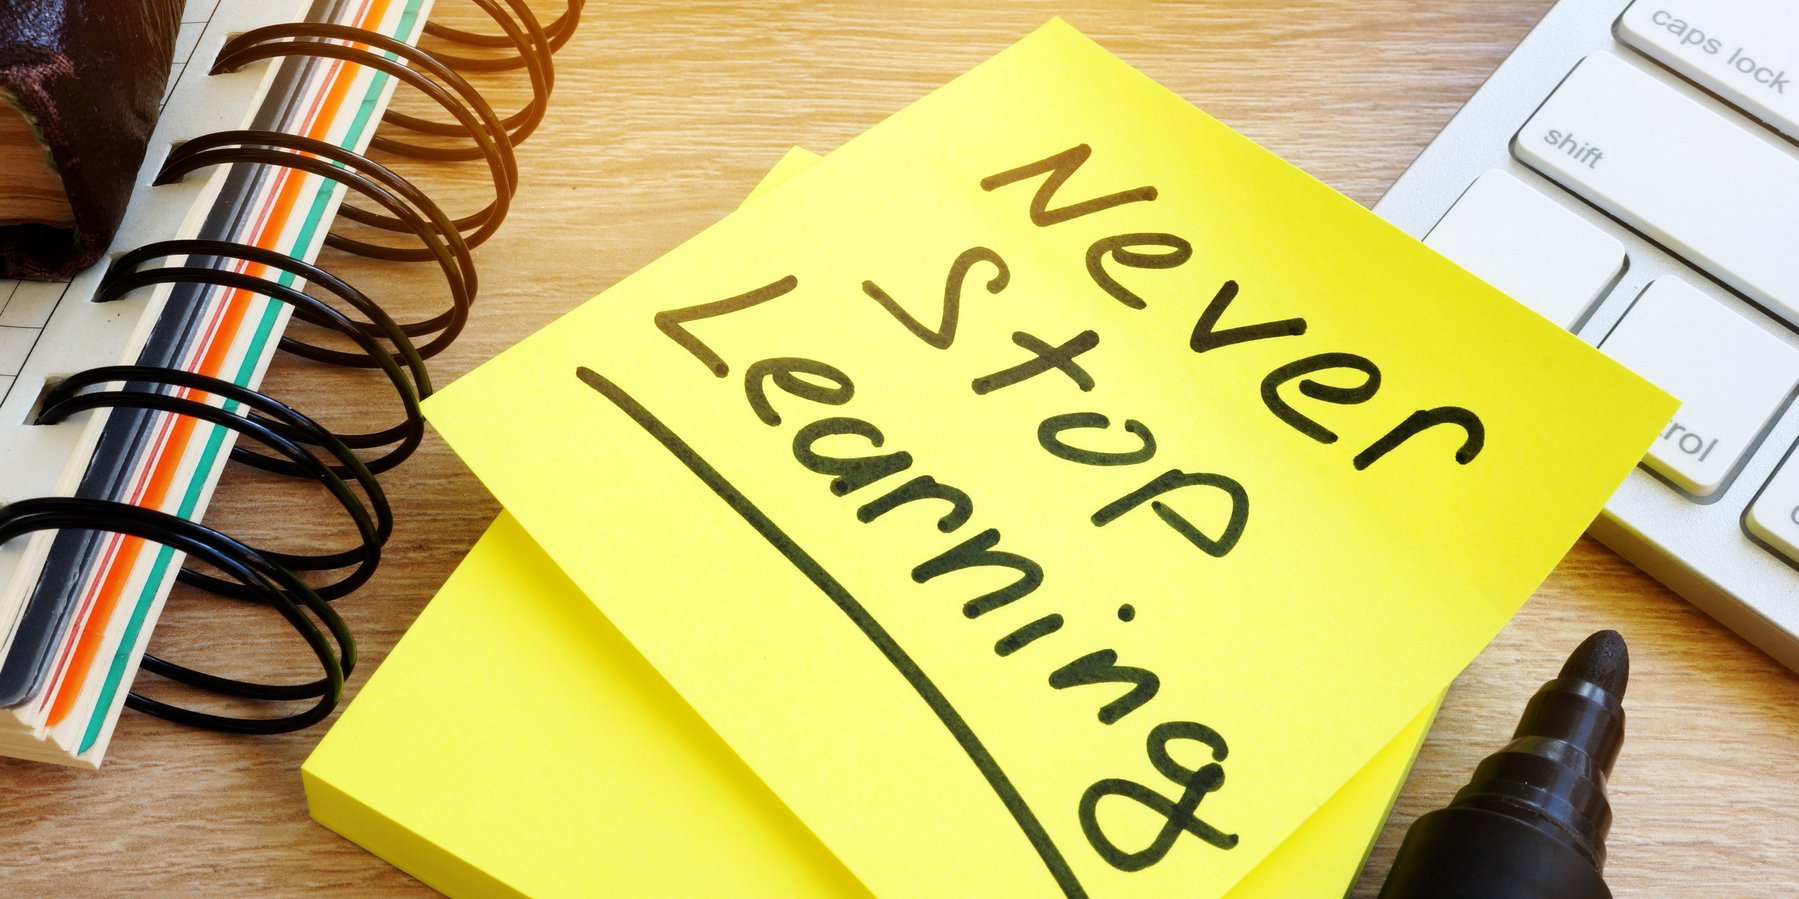 Bild mit einem Post-it mit dem Text "Never stop learning"